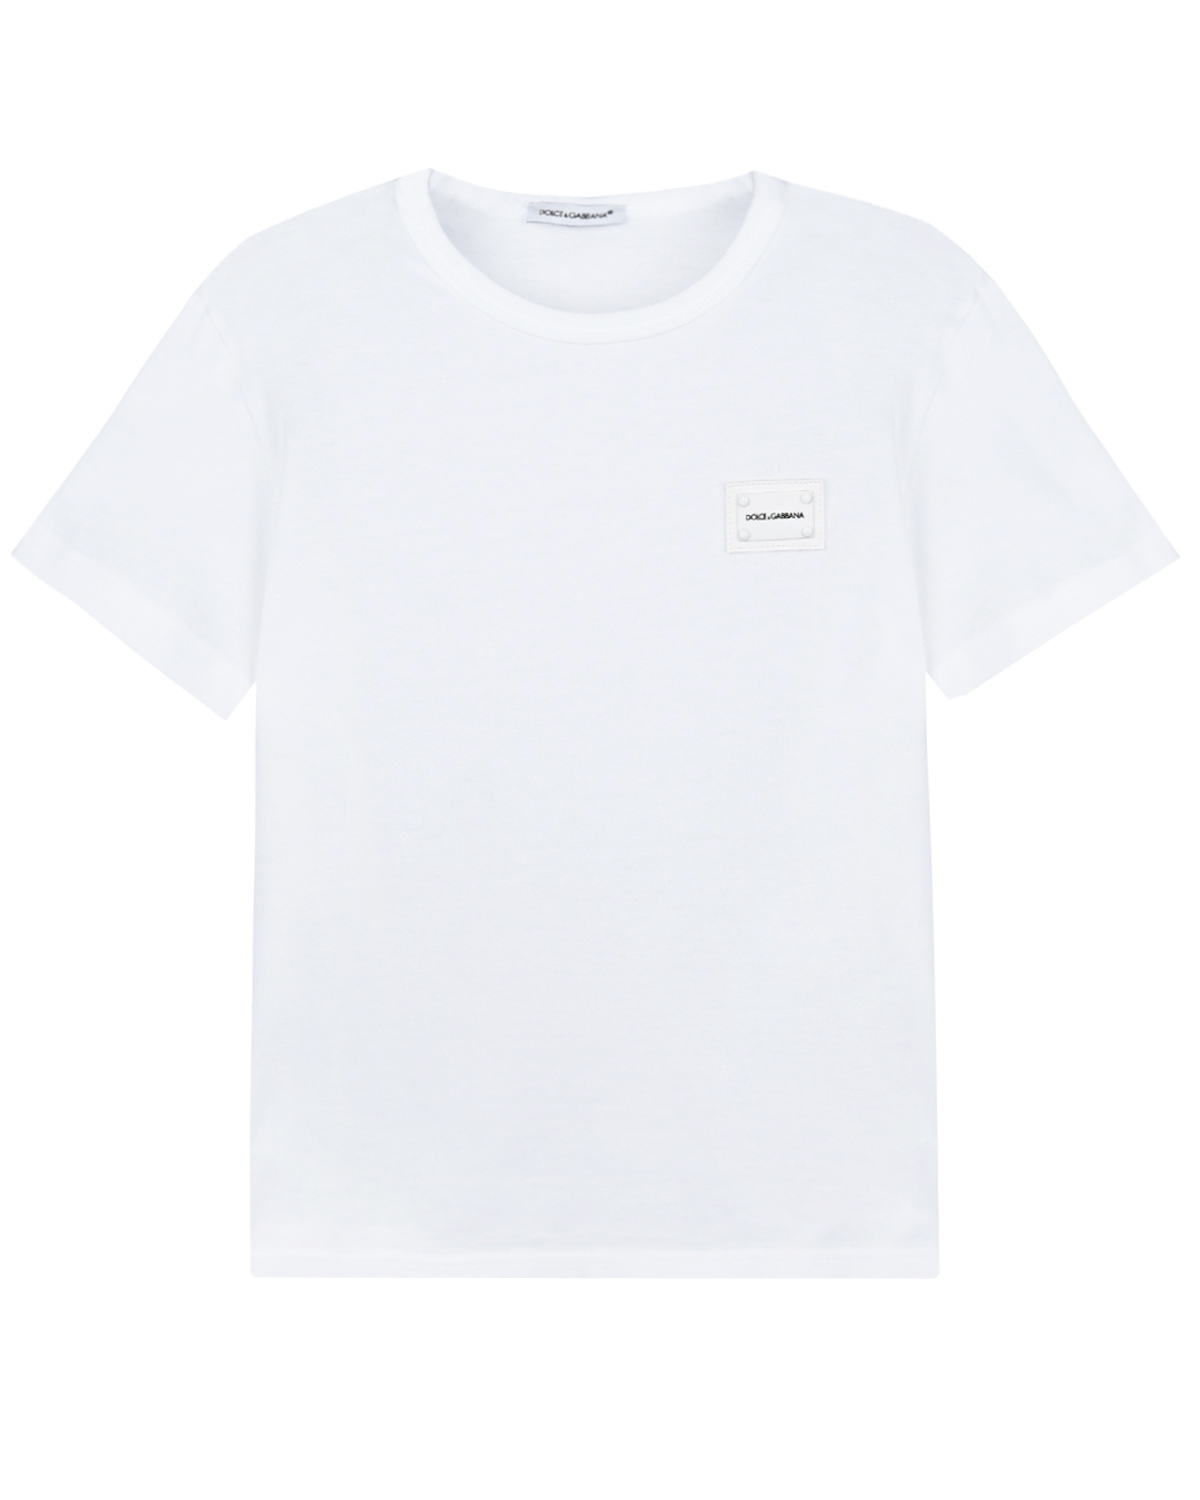 Однотонная футболка с логотипом на патче Dolce&Gabbana детская, размер 110, цвет белый - фото 1